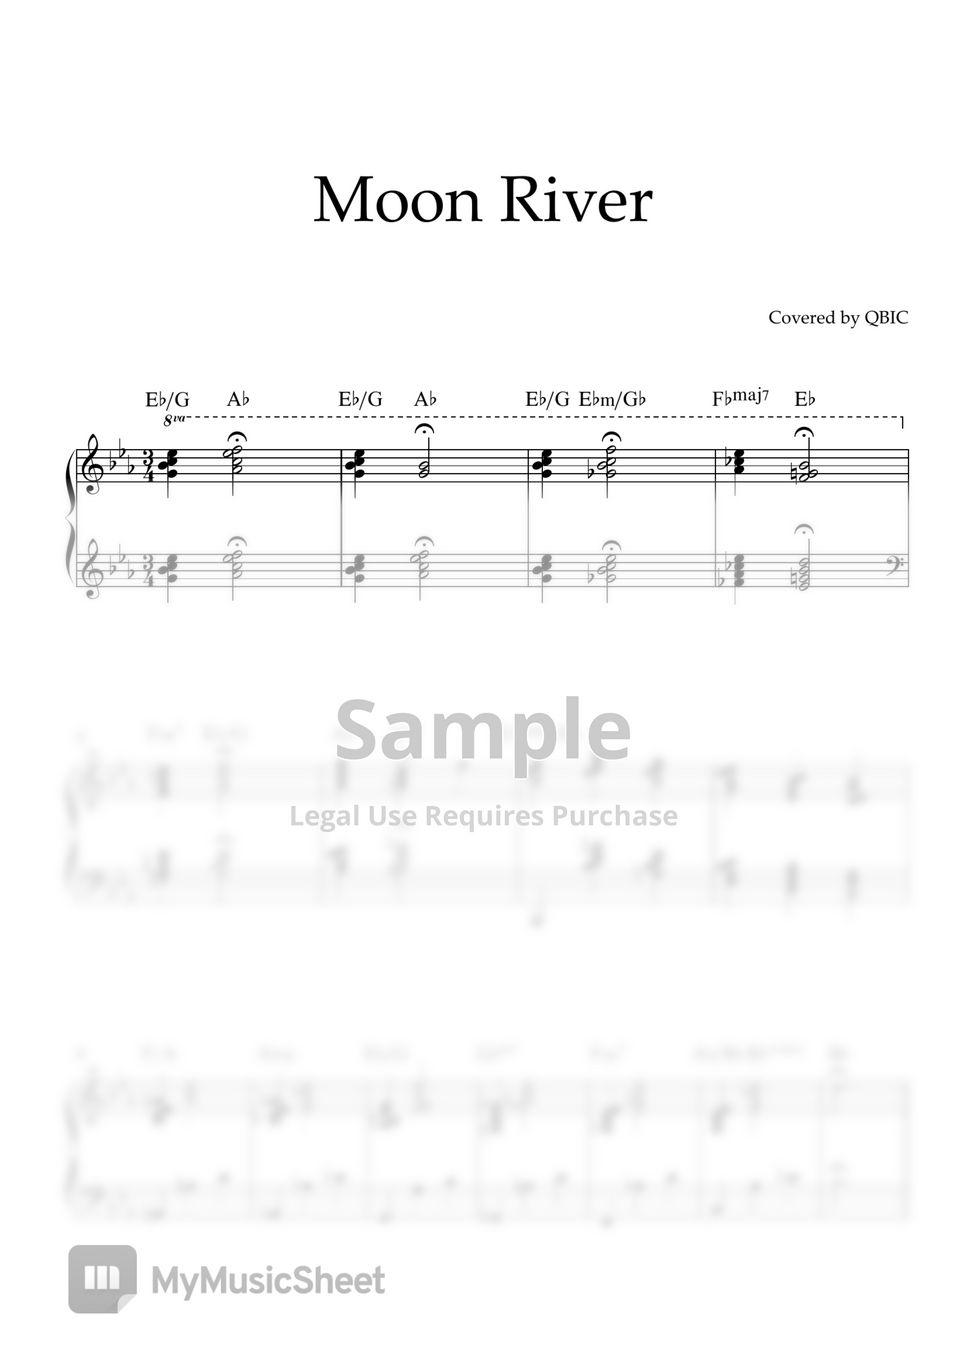 티파니에서 아침을 - Moon River (QBIC version) by QBIC